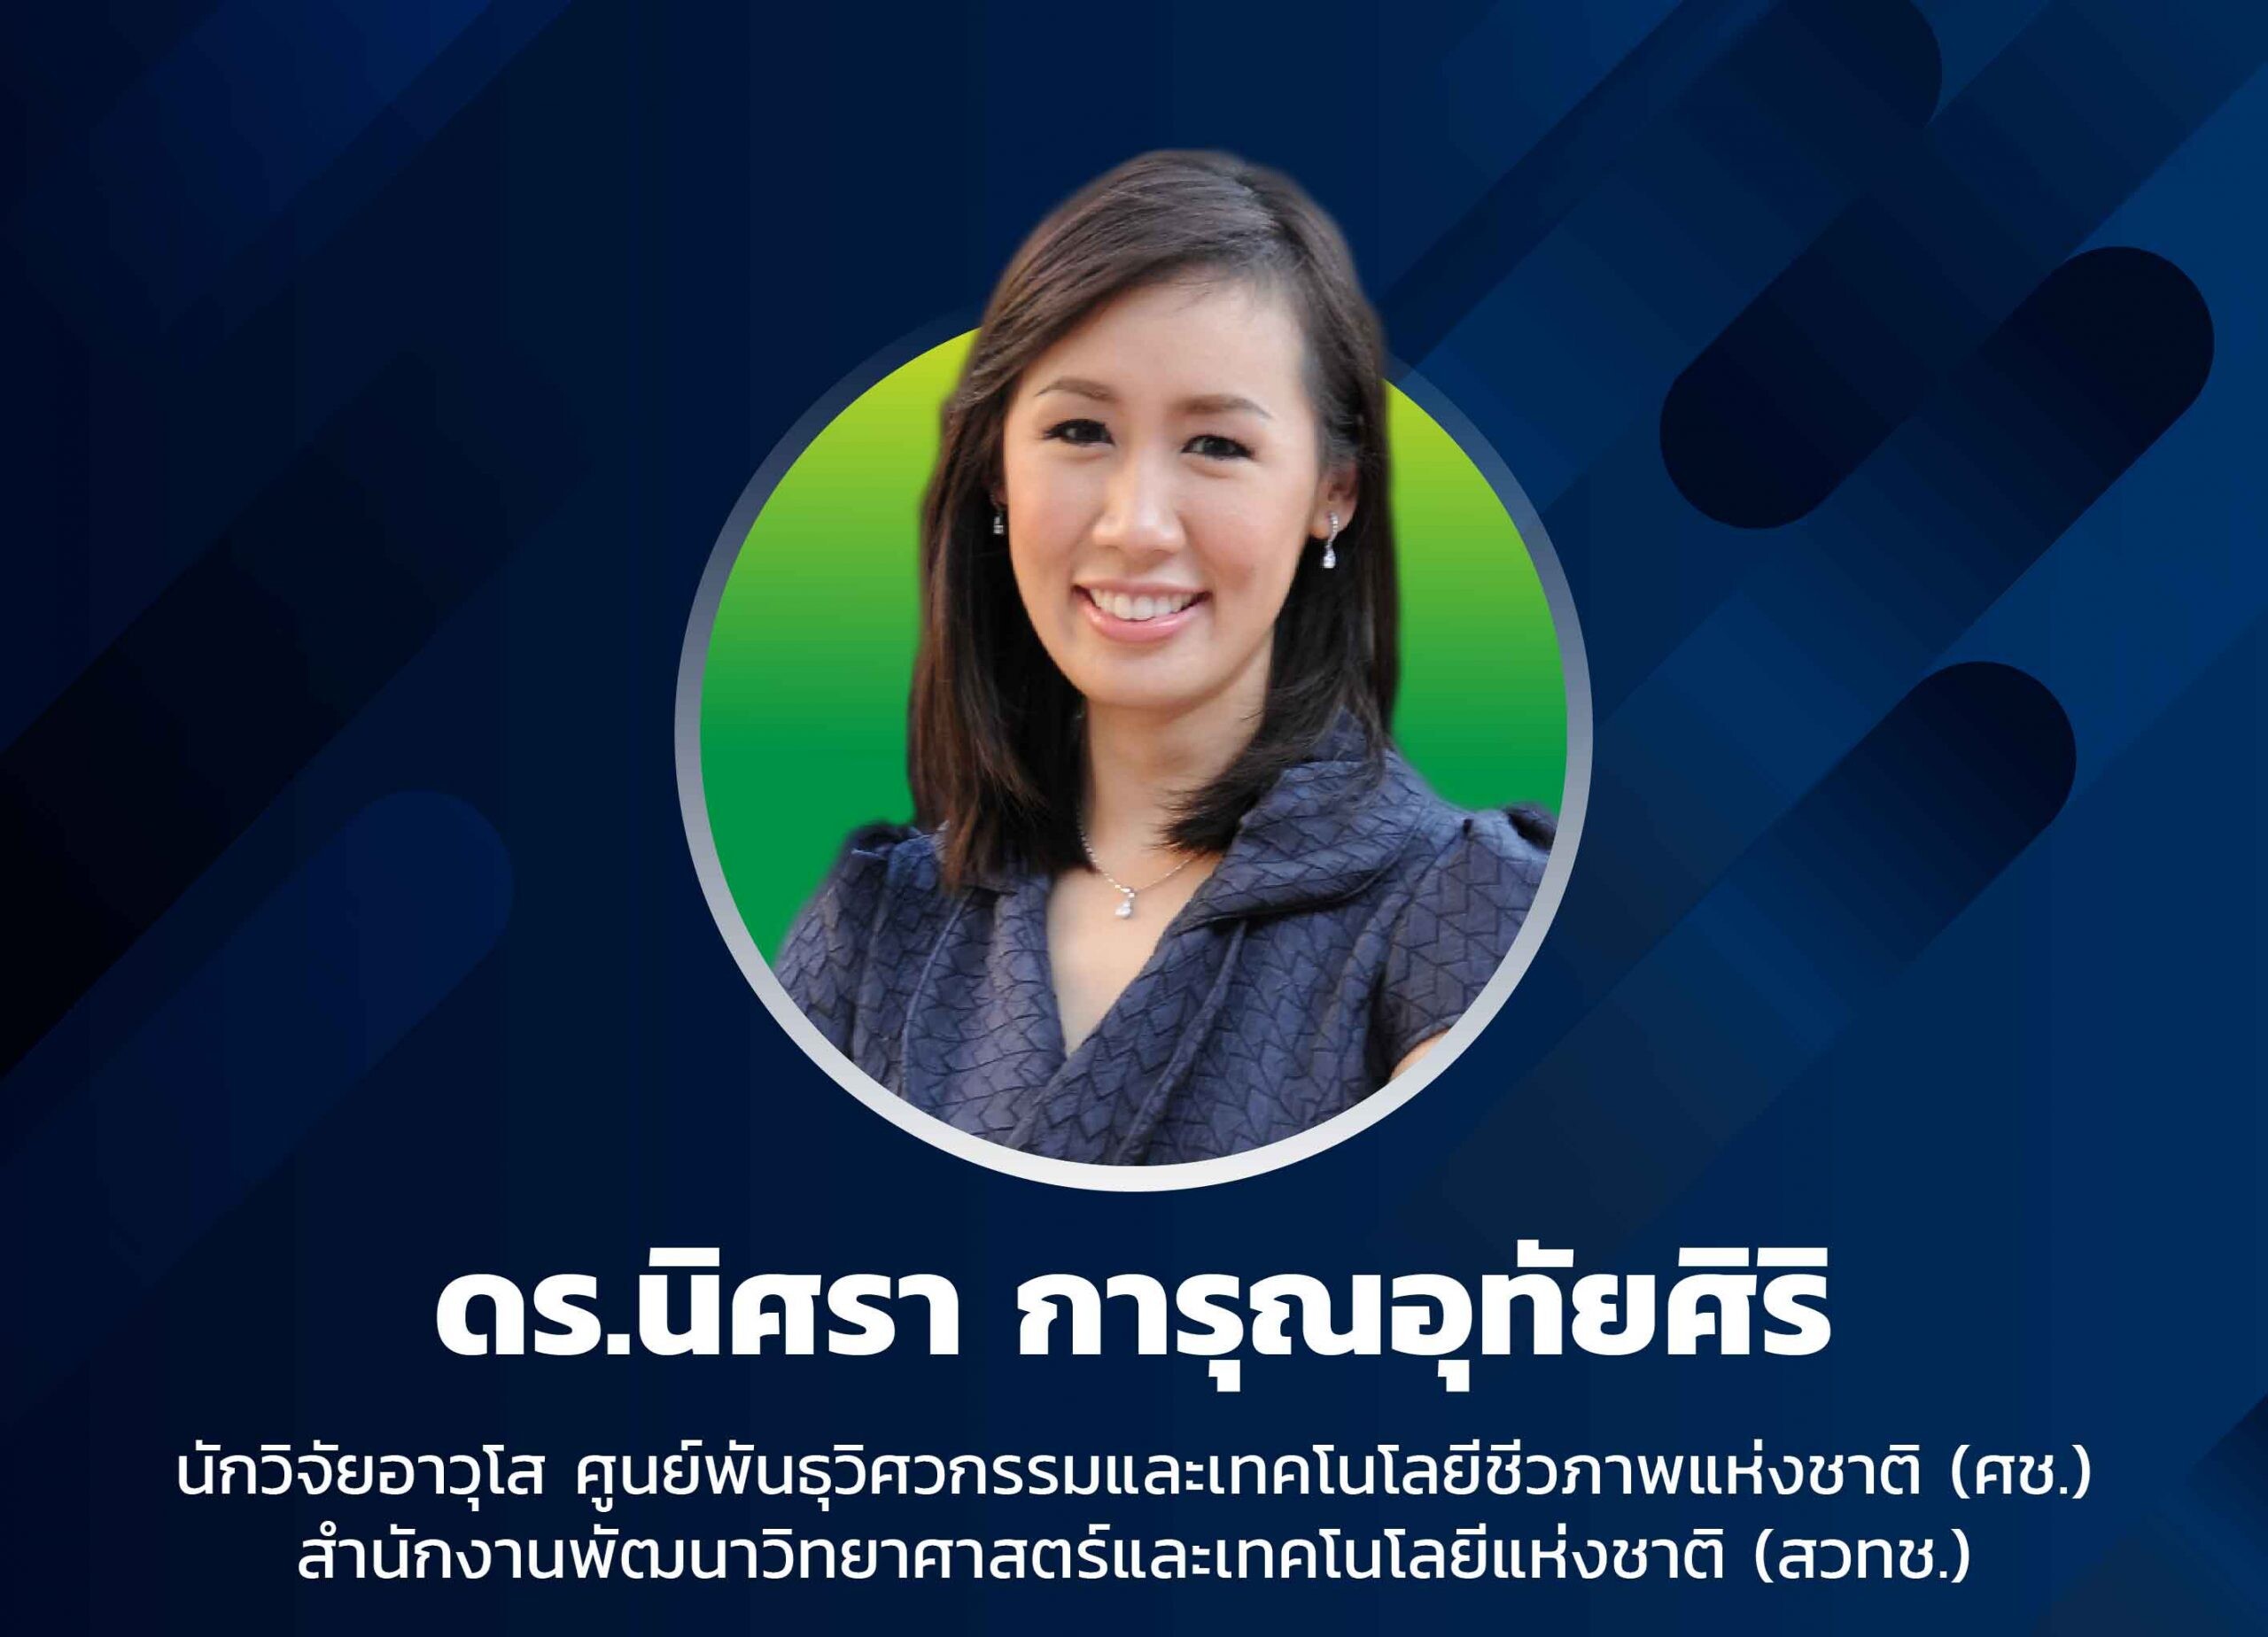 ดร.นิศรา การุณอุทัยศิริ ได้รับรางวัลนักเรียนทุนรัฐบาลไทยดาวรุ่ง ประจำปี 2564 จากสมาคมนักเรียนทุนรัฐบาลไทย